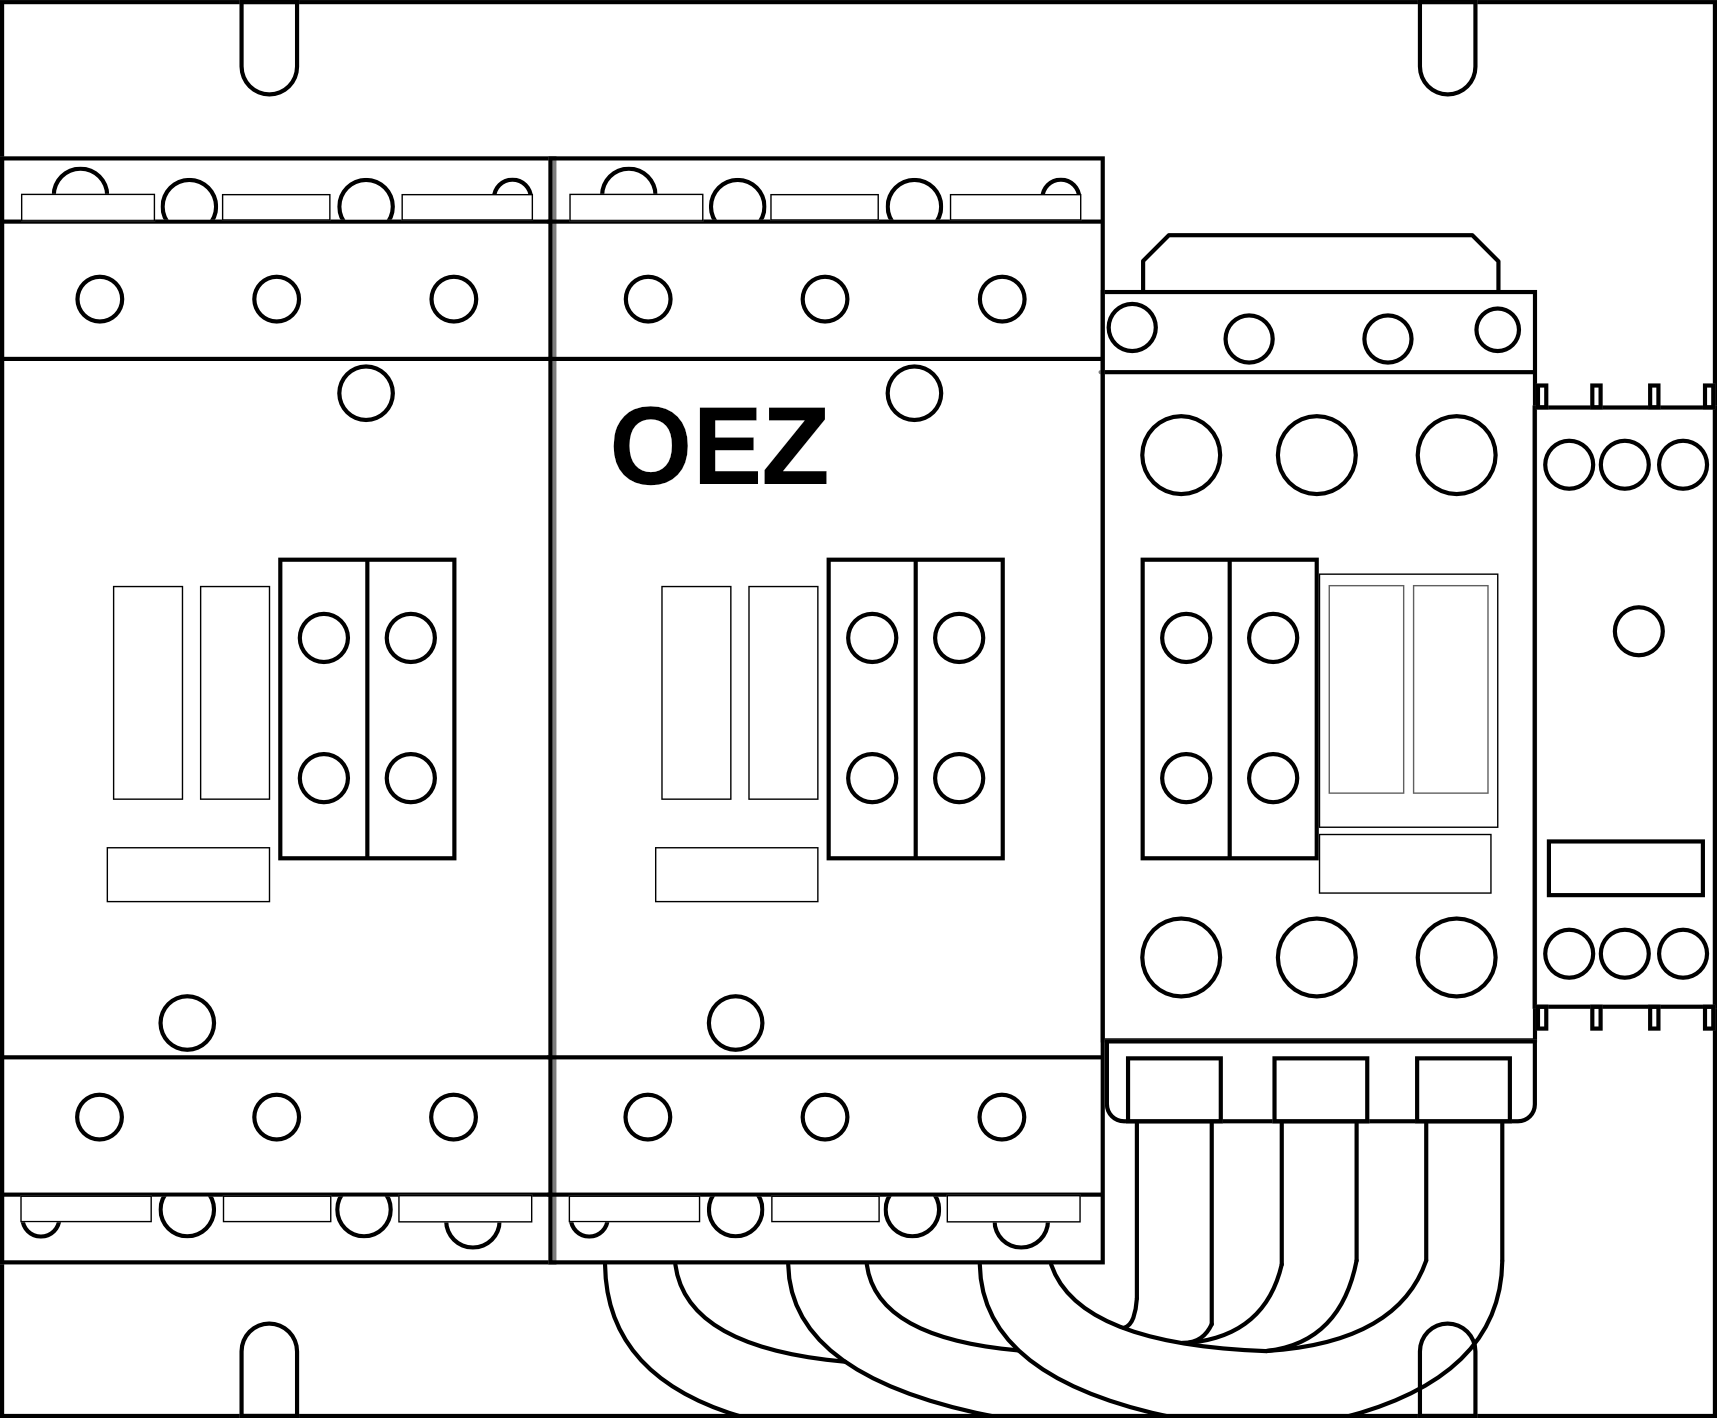 Stykačová kombinace spouštění Y/D OEZ Conteo 3RA1444-8XC21-1AL2 velikost 100-100-50, 115A, ovládací napětí 230V AC